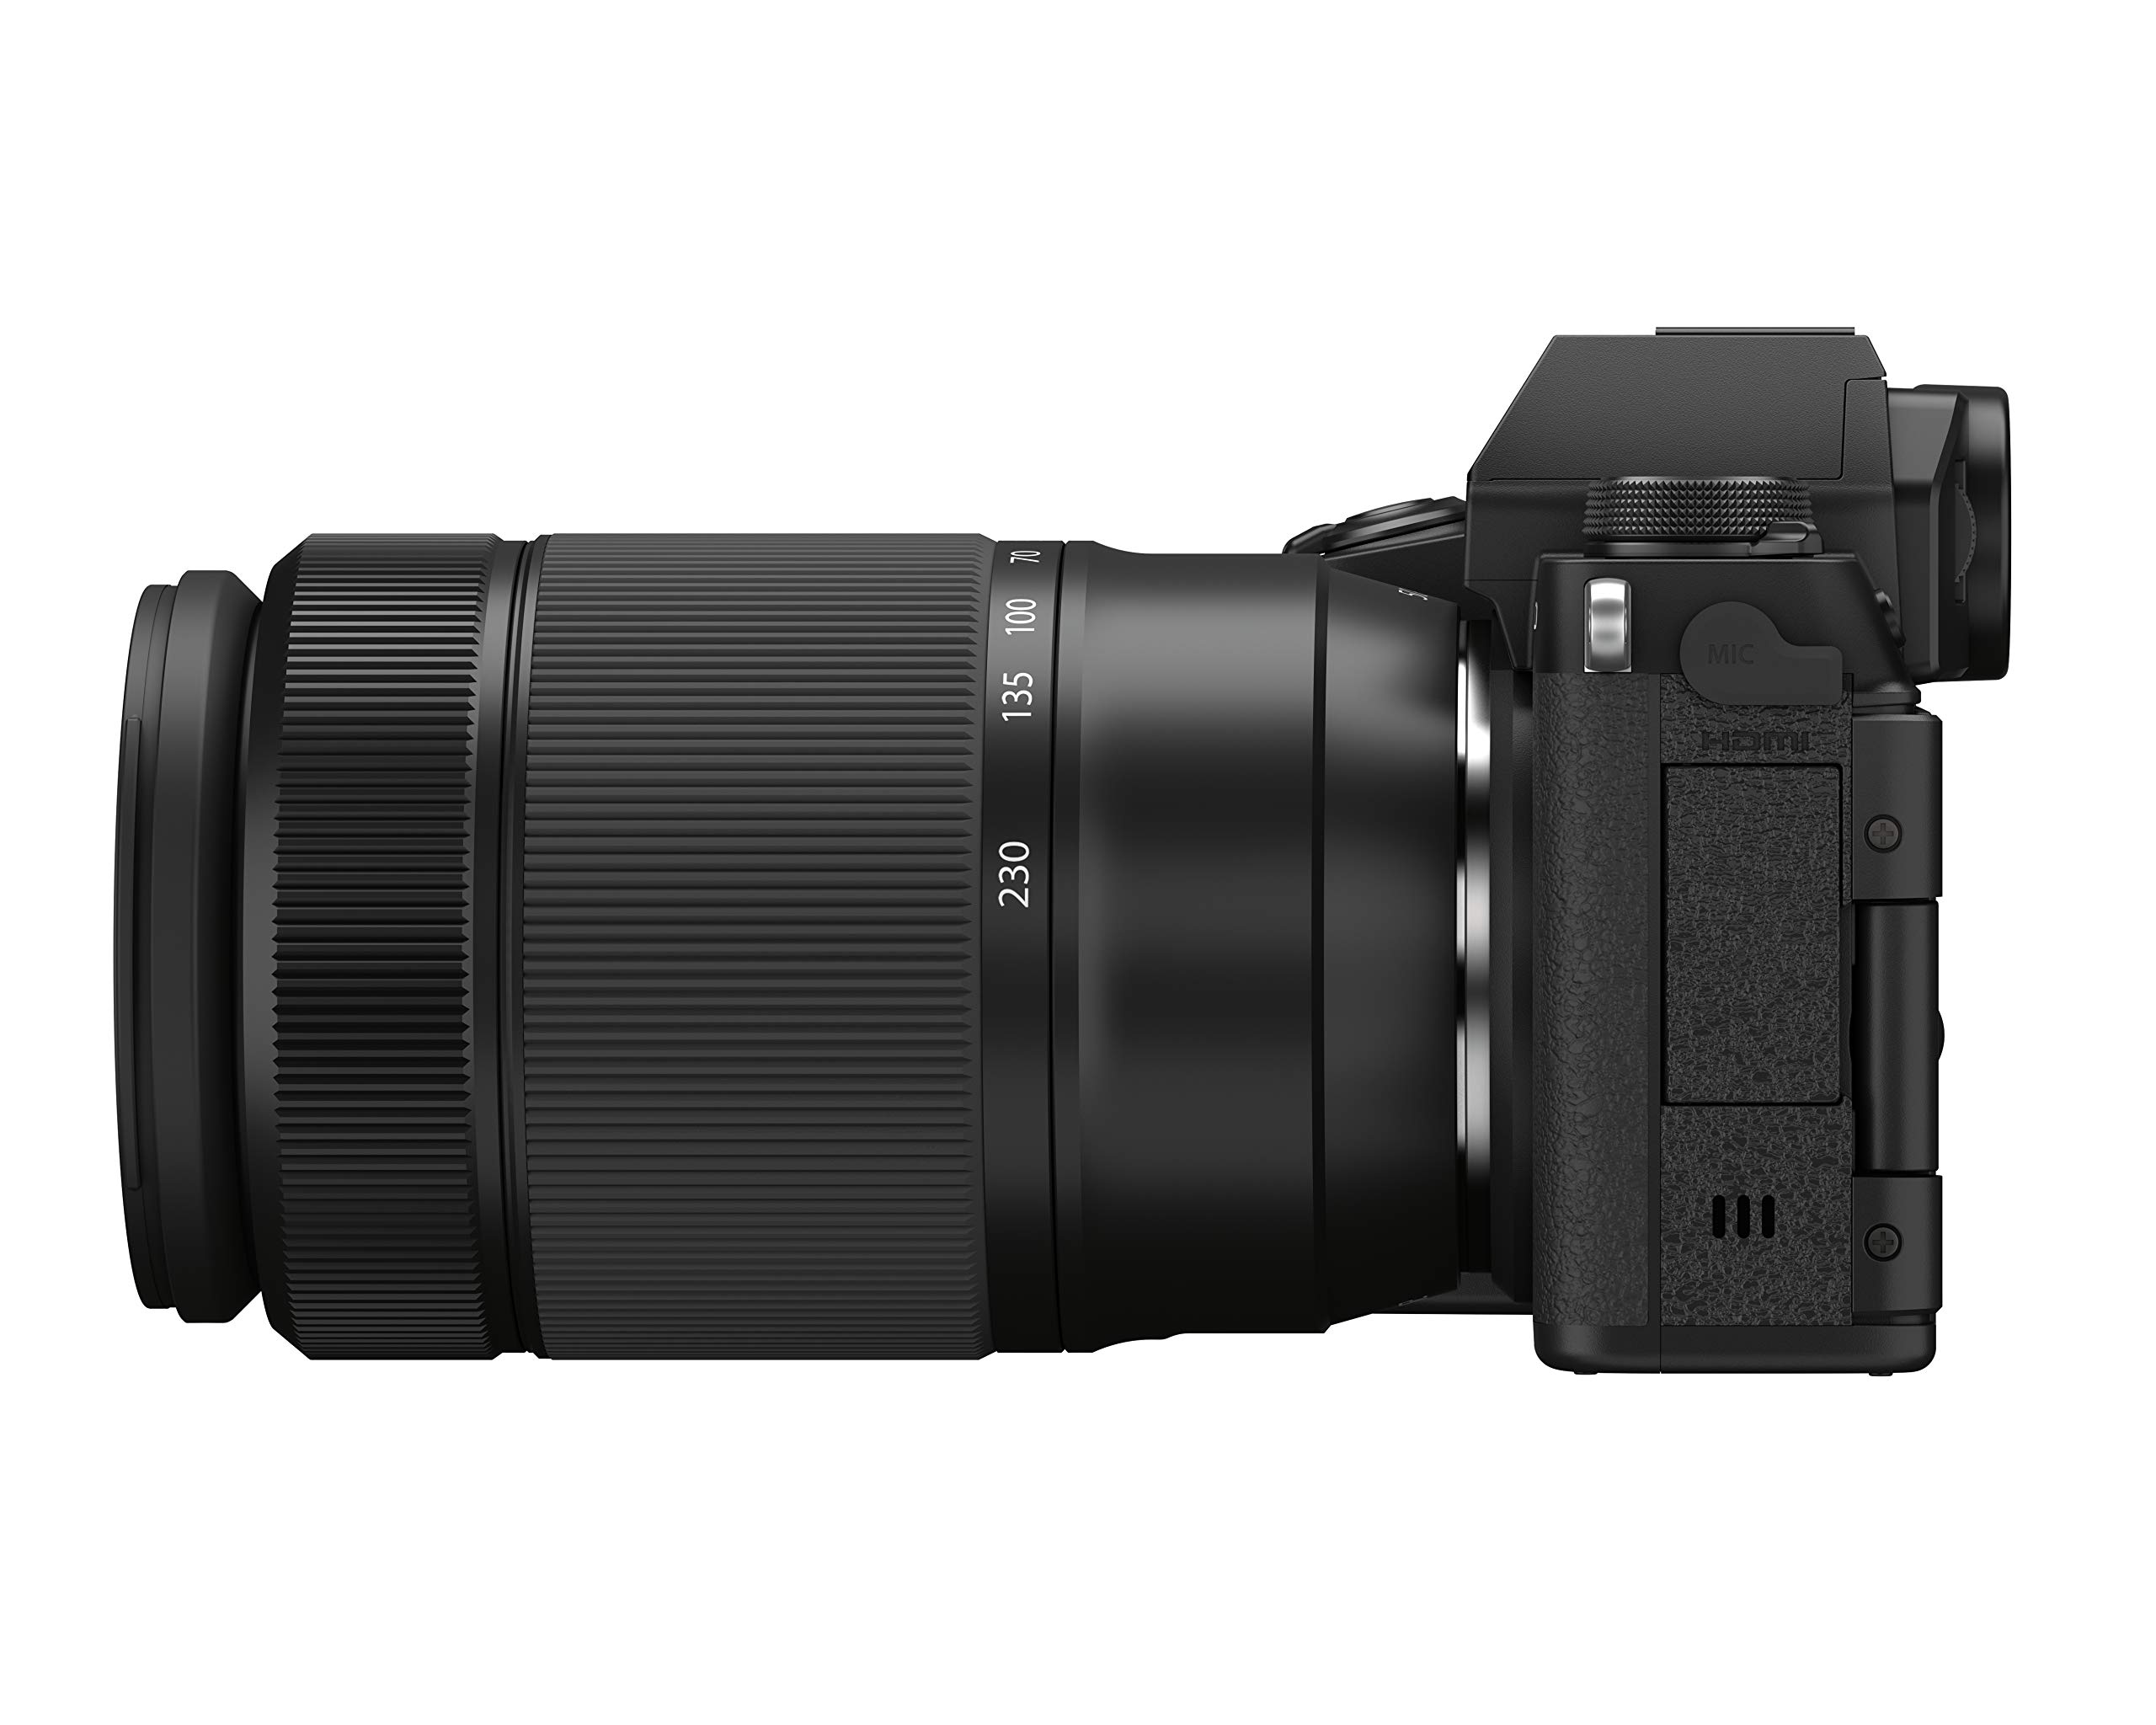 FUJIFILM X-S10 W Mirrorless Digital Camera Zoom Lens Kit, F X-S10LK-1545/50230, Black